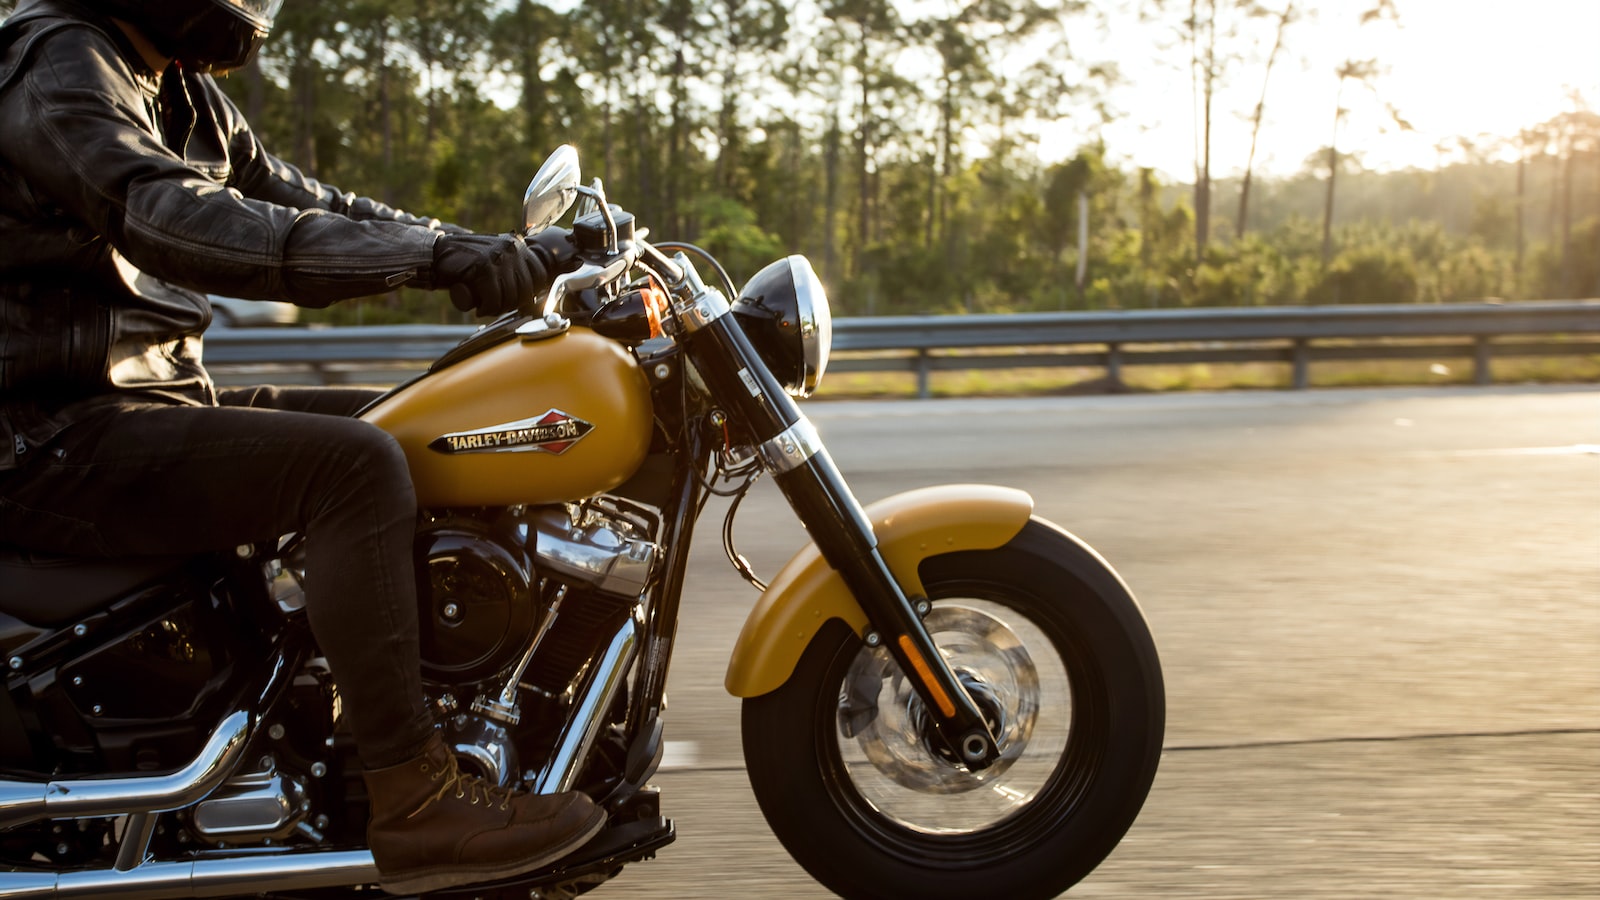 Best Harley Davidson Captions For Instagram